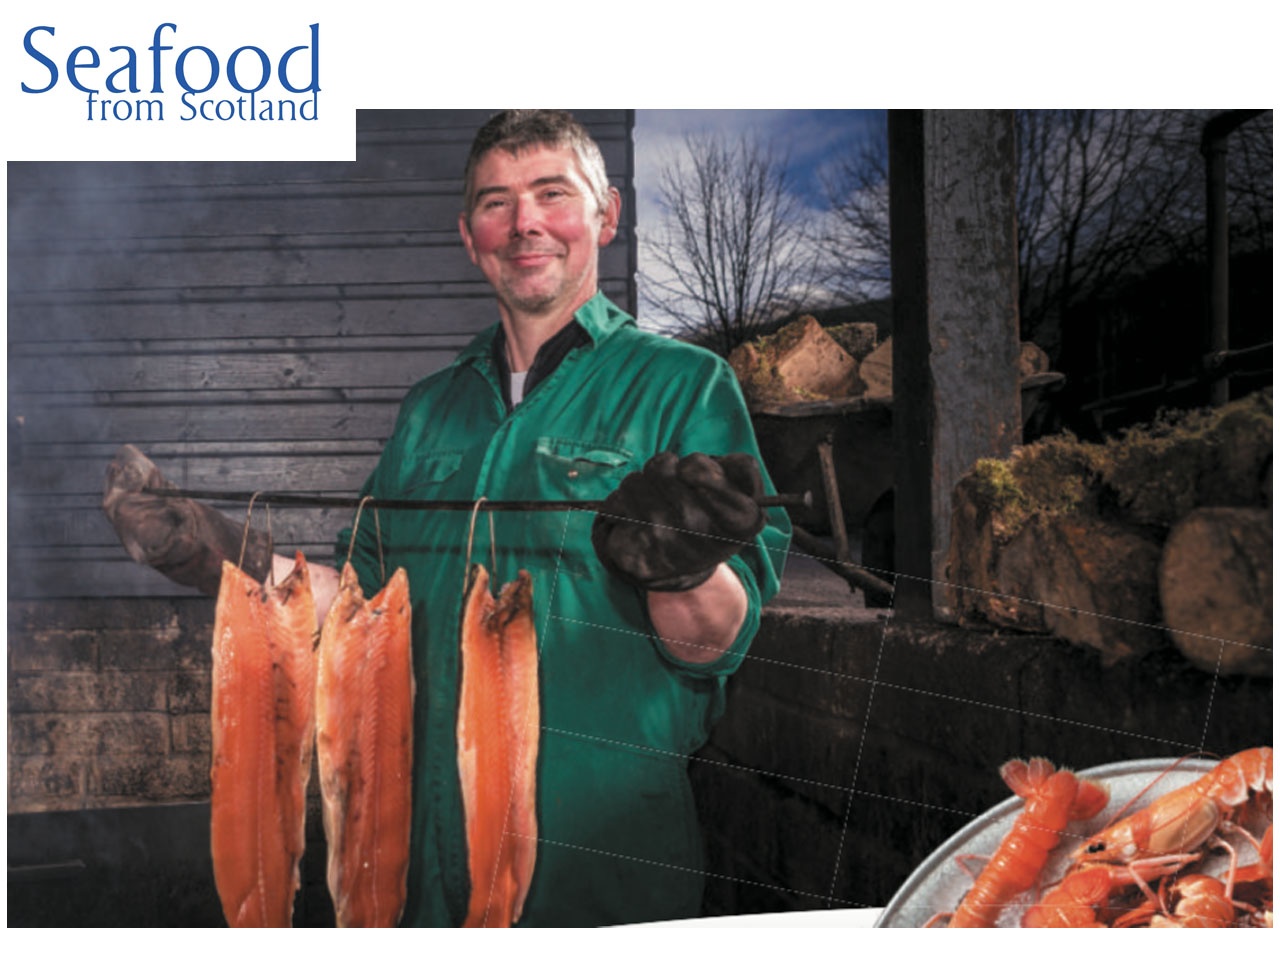 Seafood from Scotland transmet savoir-faire, pour aller plus loin dans la premiumisation de ses produits